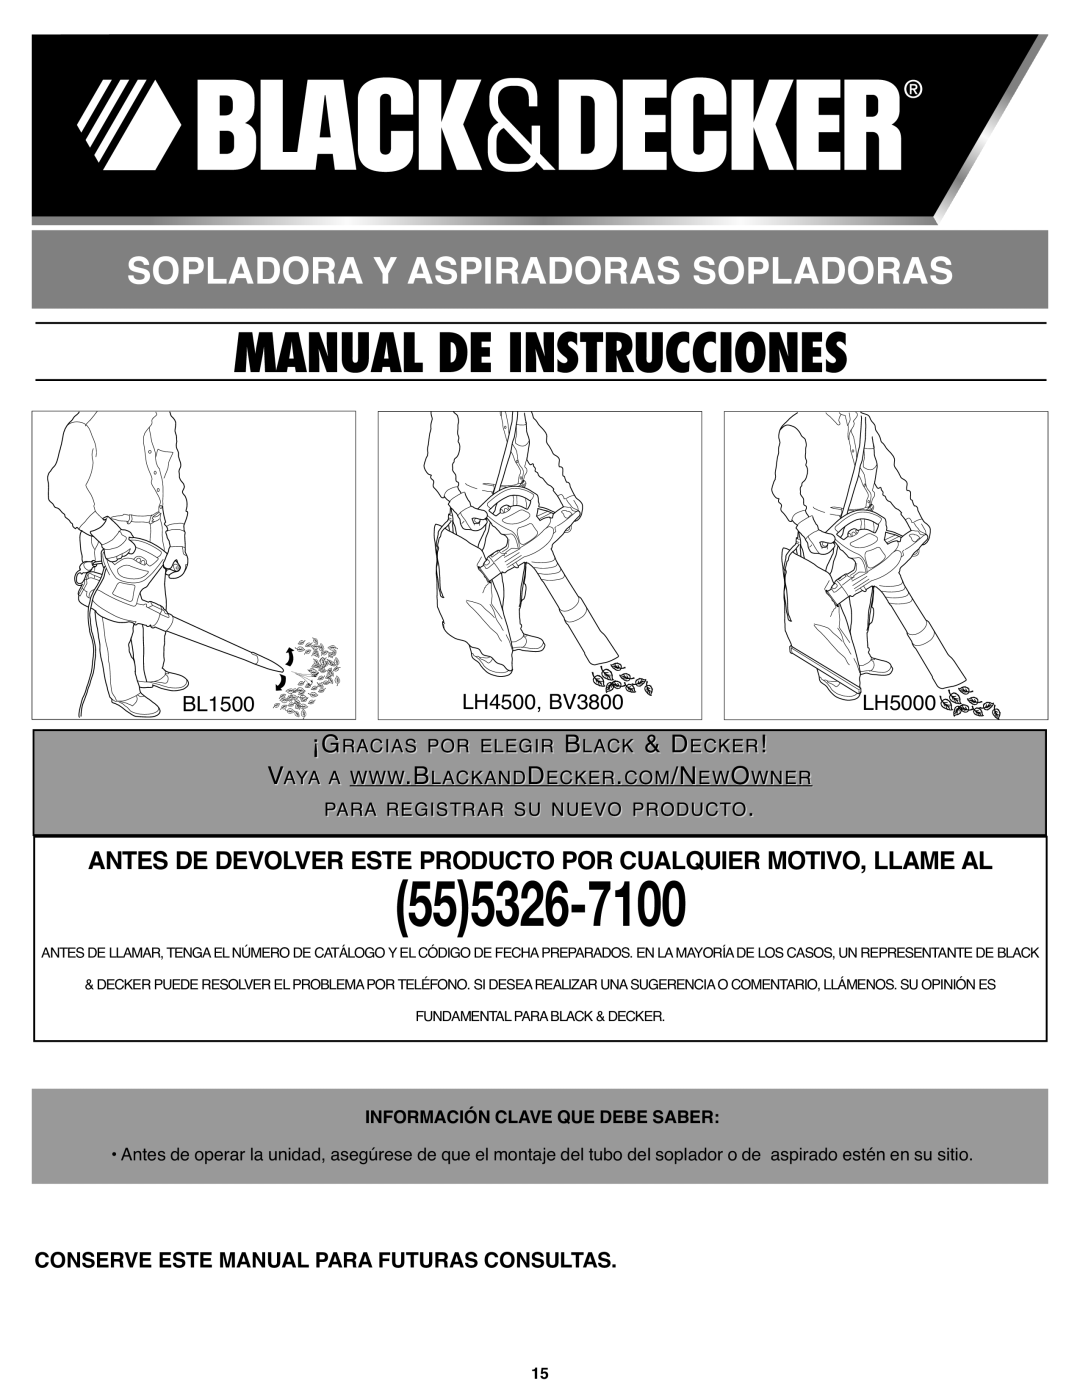 Black & Decker BL 1500M LH Manual De Instrucciones, Sopladora Y Aspiradoras Sopladoras, Istrar Su Nuevo Producto, Para Reg 